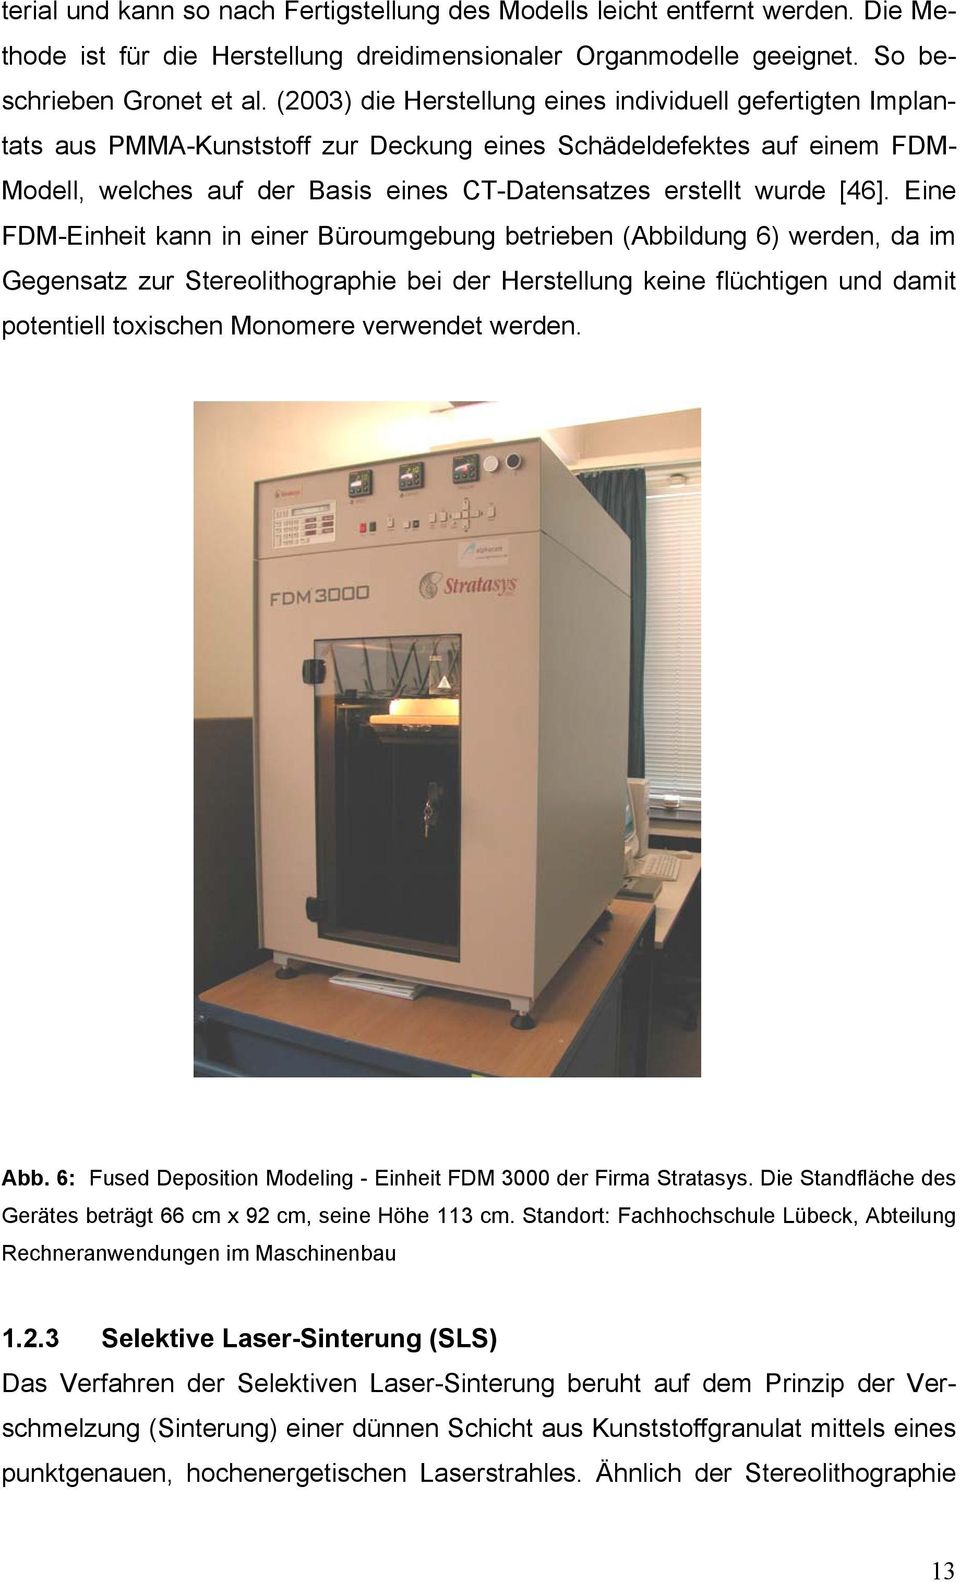 [46]. Eine FDM-Einheit kann in einer Büroumgebung betrieben (Abbildung 6) werden, da im Gegensatz zur Stereolithographie bei der Herstellung keine flüchtigen und damit potentiell toxischen Monomere